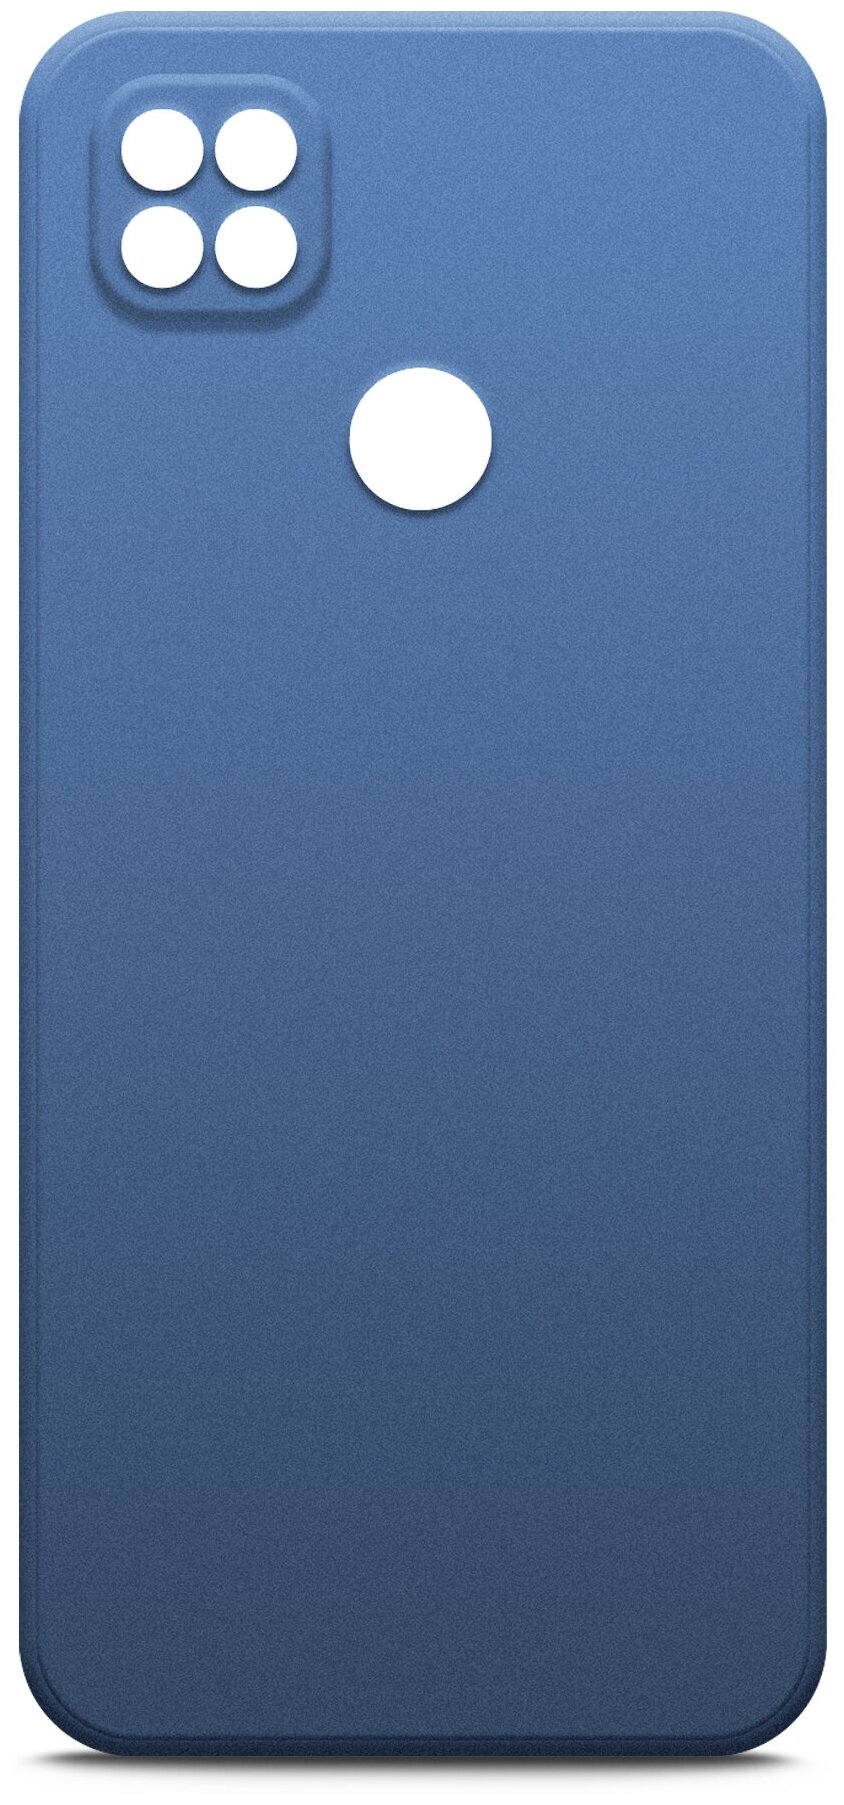 Чехол на Xiaomi Redmi 10A (Ксиоми Редми 10А) силиконовый с защитной подкладкой из микрофибры, синий, Miuko